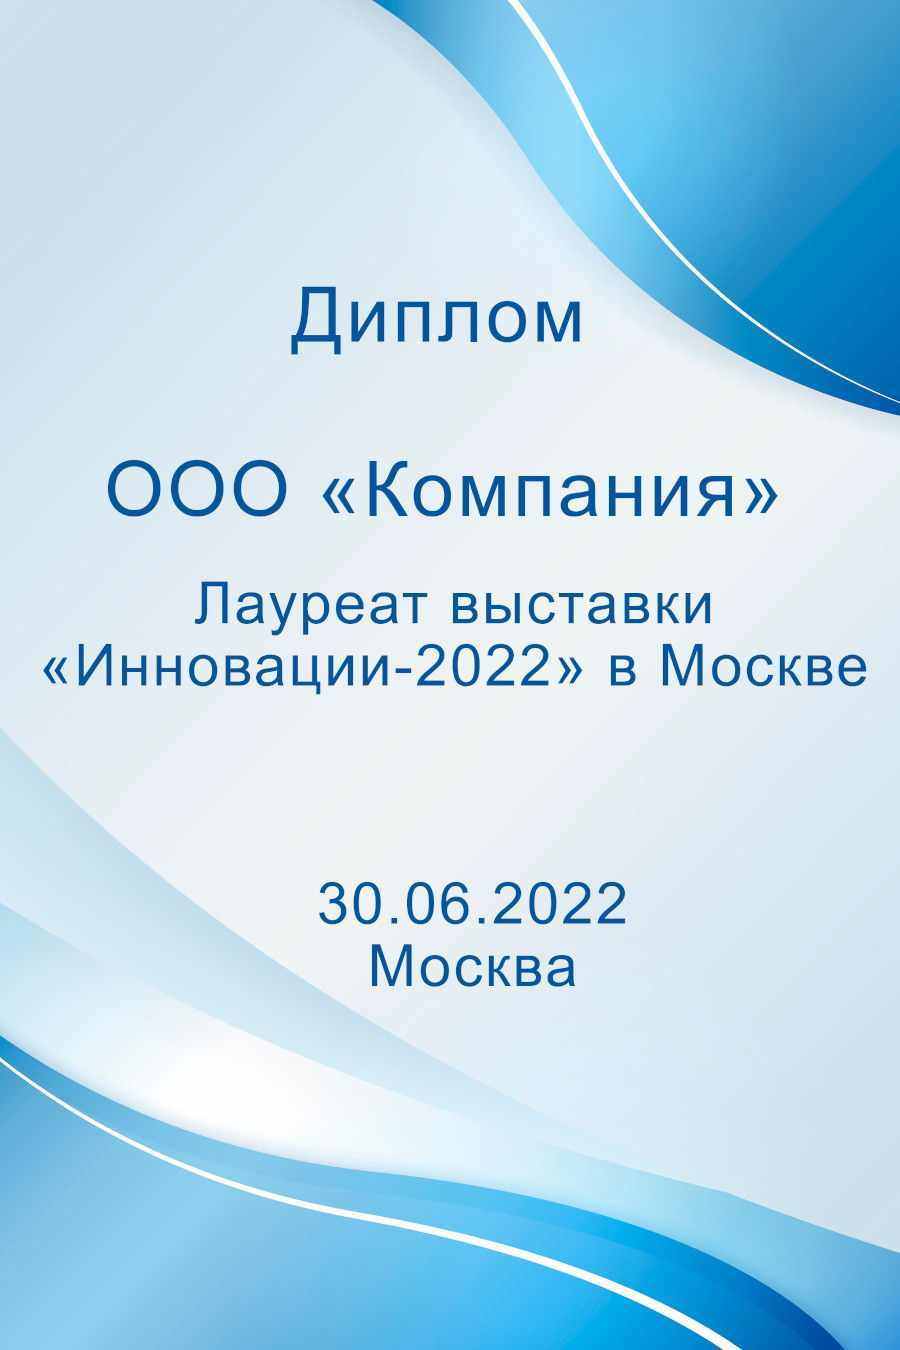 Лауреат выставки "Инновации-2022" в Москве